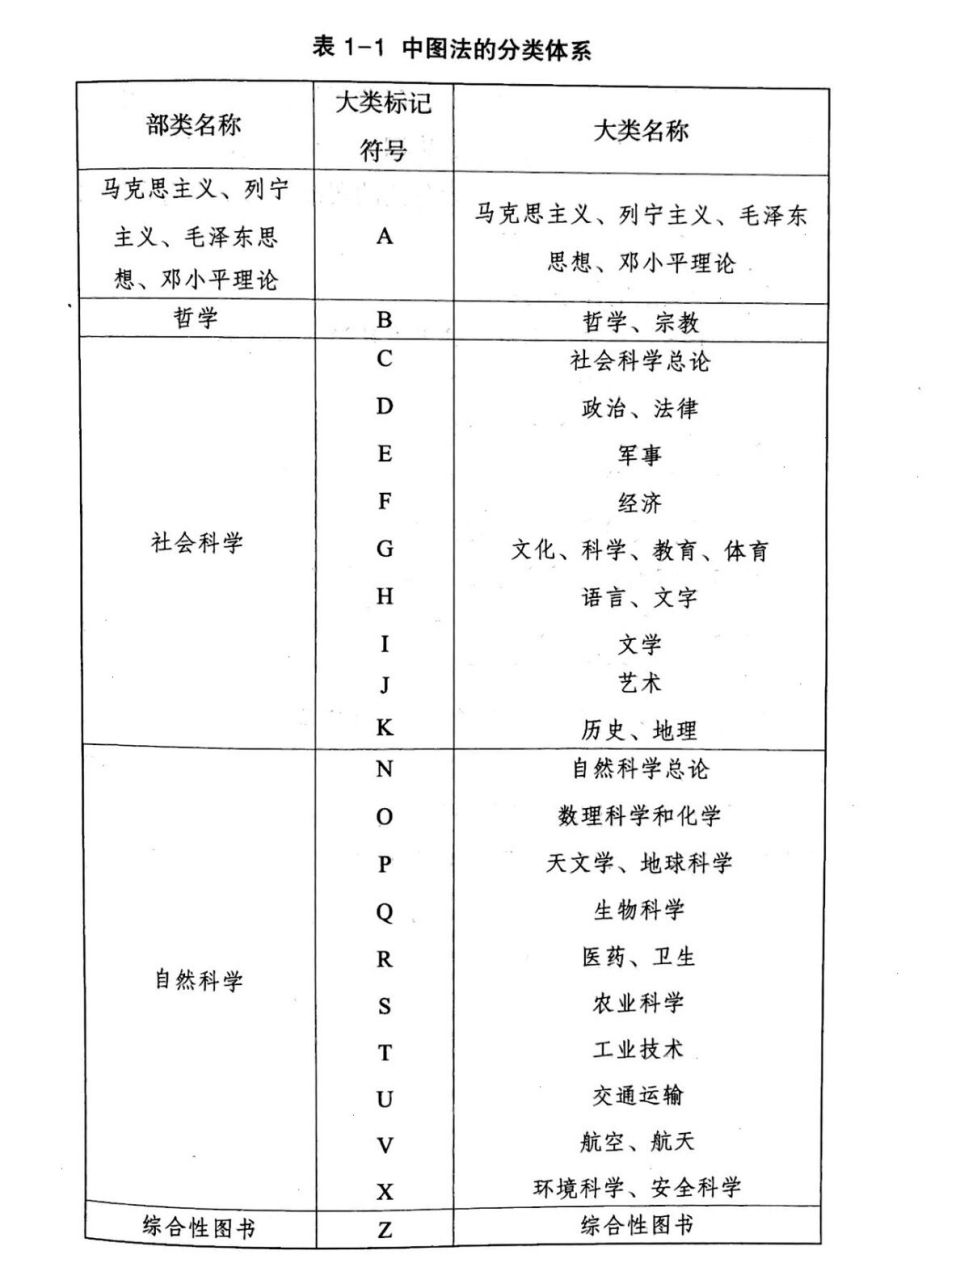 中国图书馆分类法T类图片